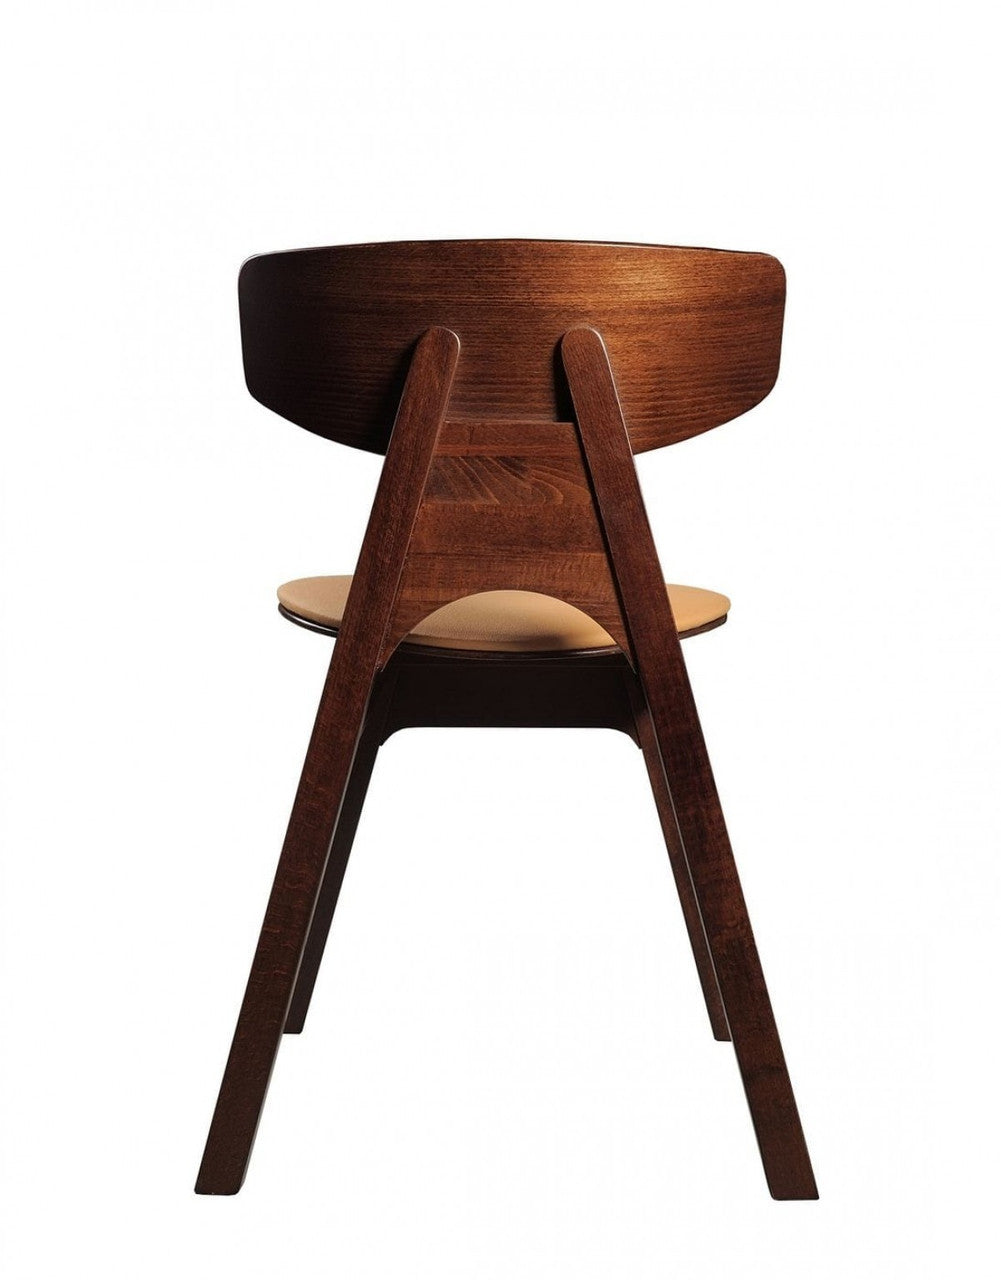 Modrest Beeler Modern Camel Dining Chair (Set of 2)